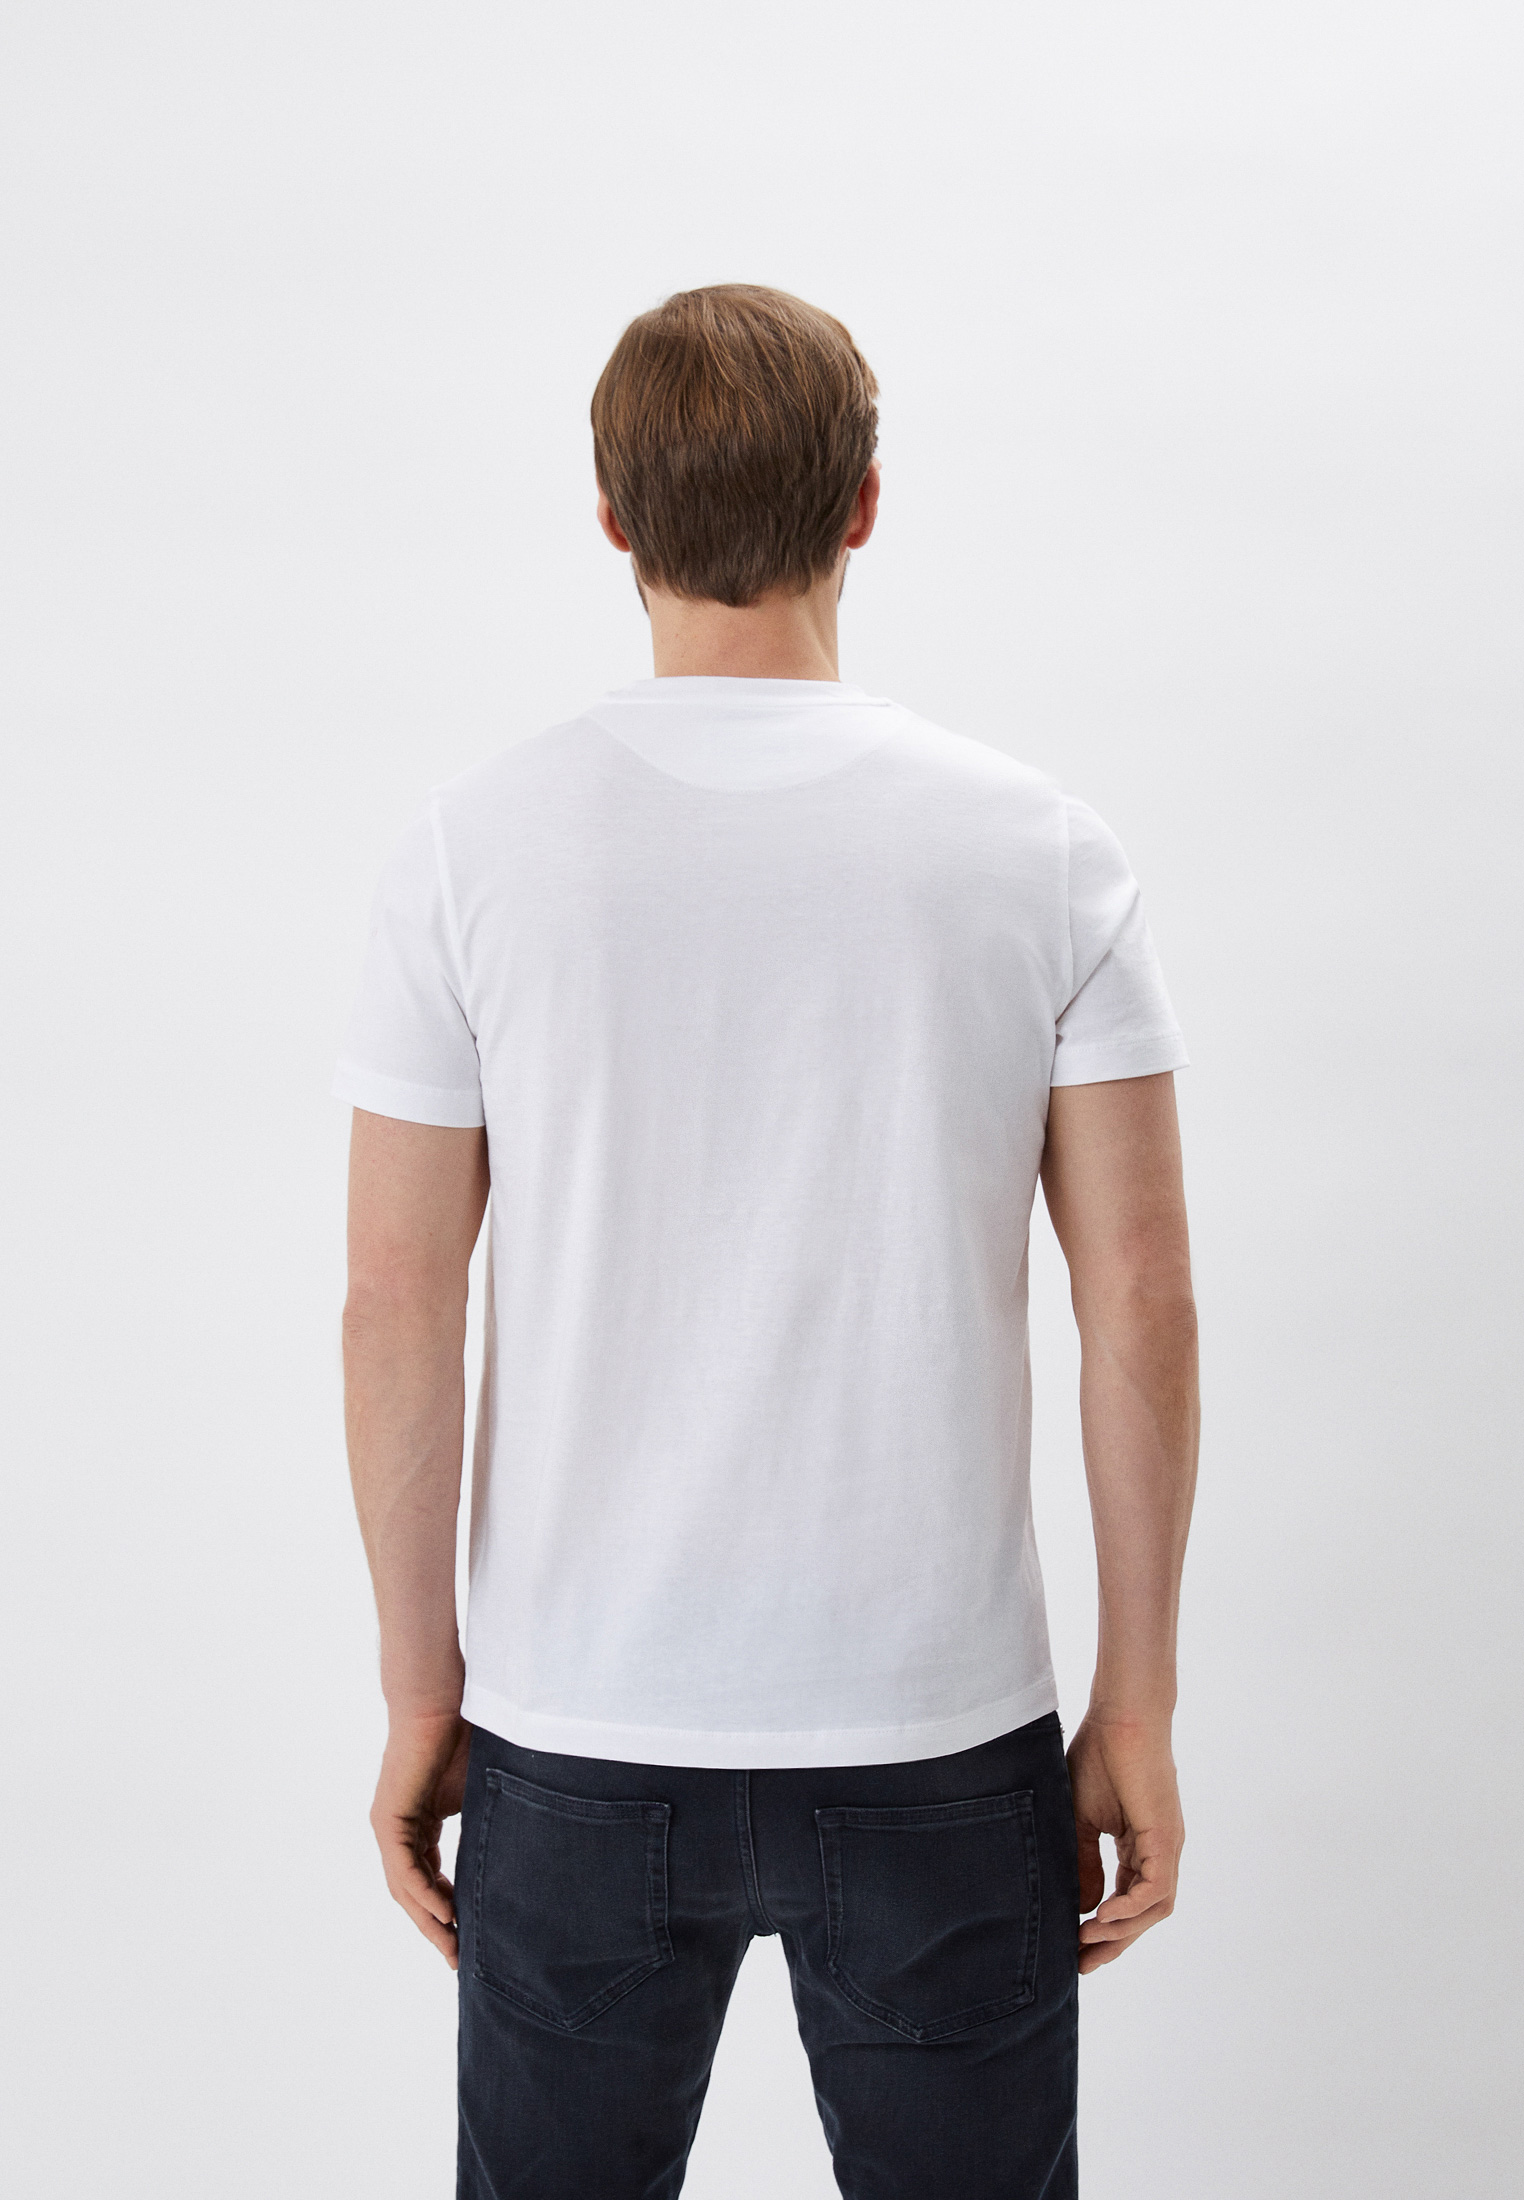 Мужская футболка Bikkembergs (Биккембергс) C 4 101 1B M 4349: изображение 3